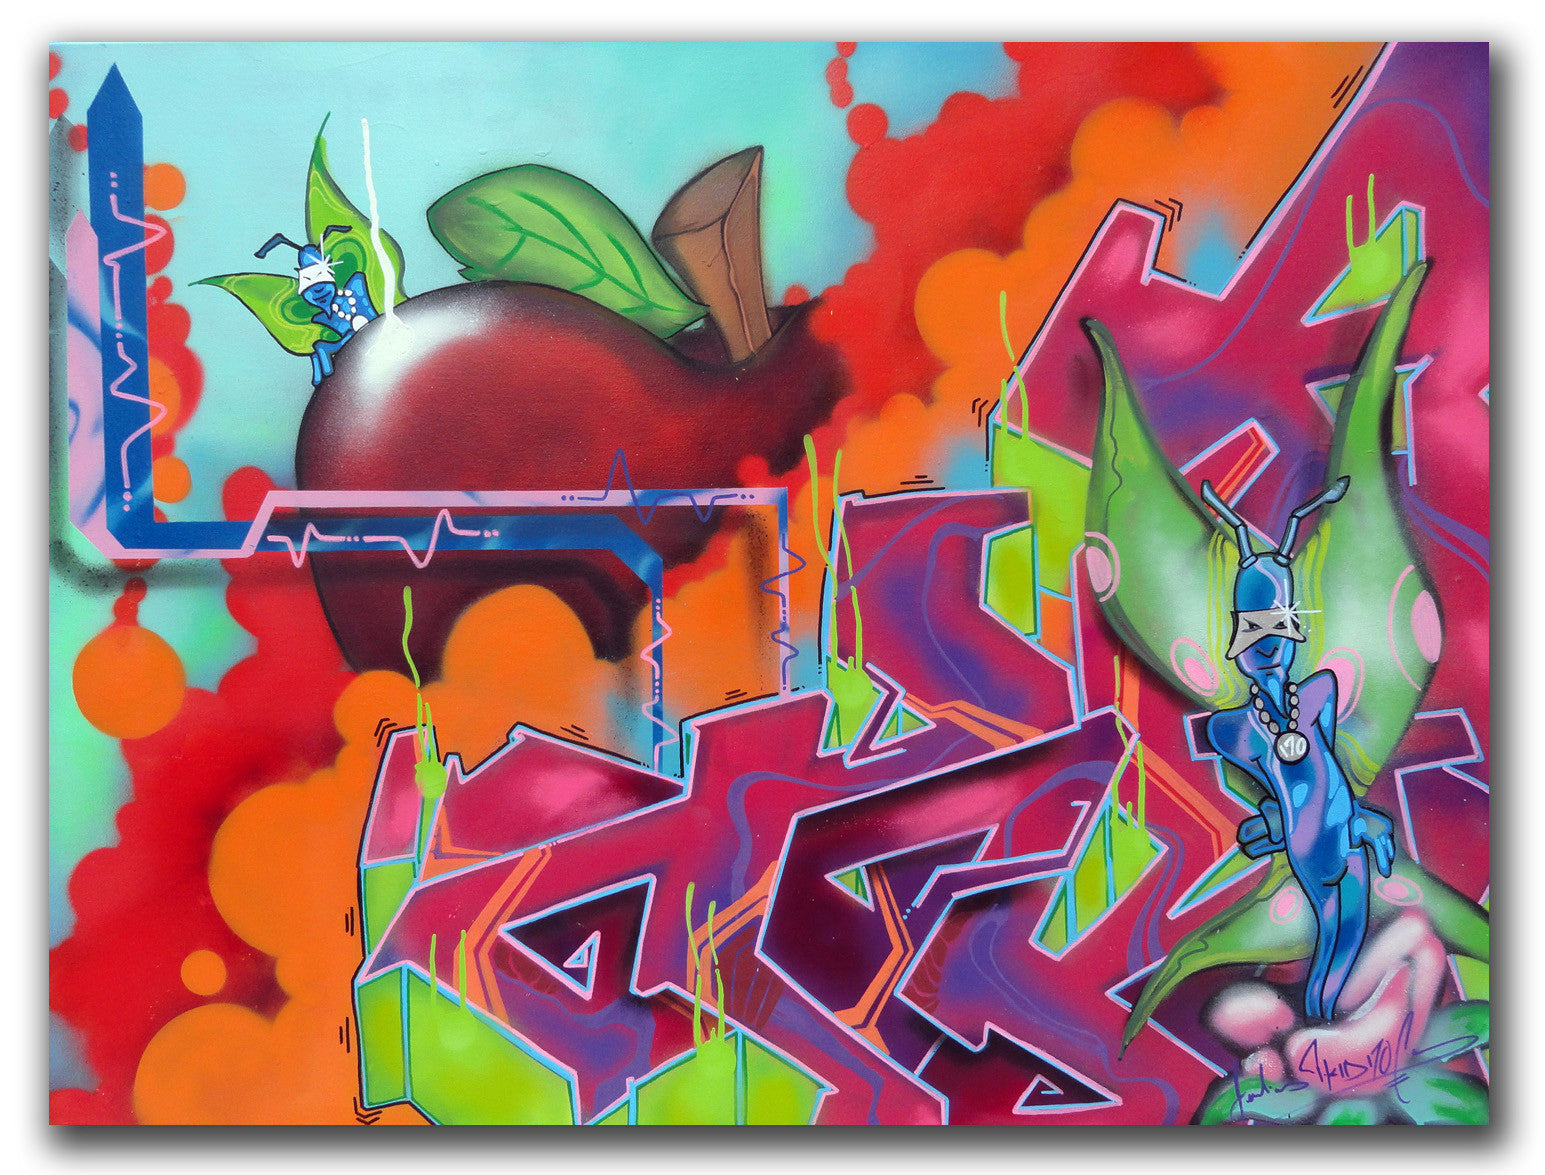 T-KID 170  - "The Apple" Painting